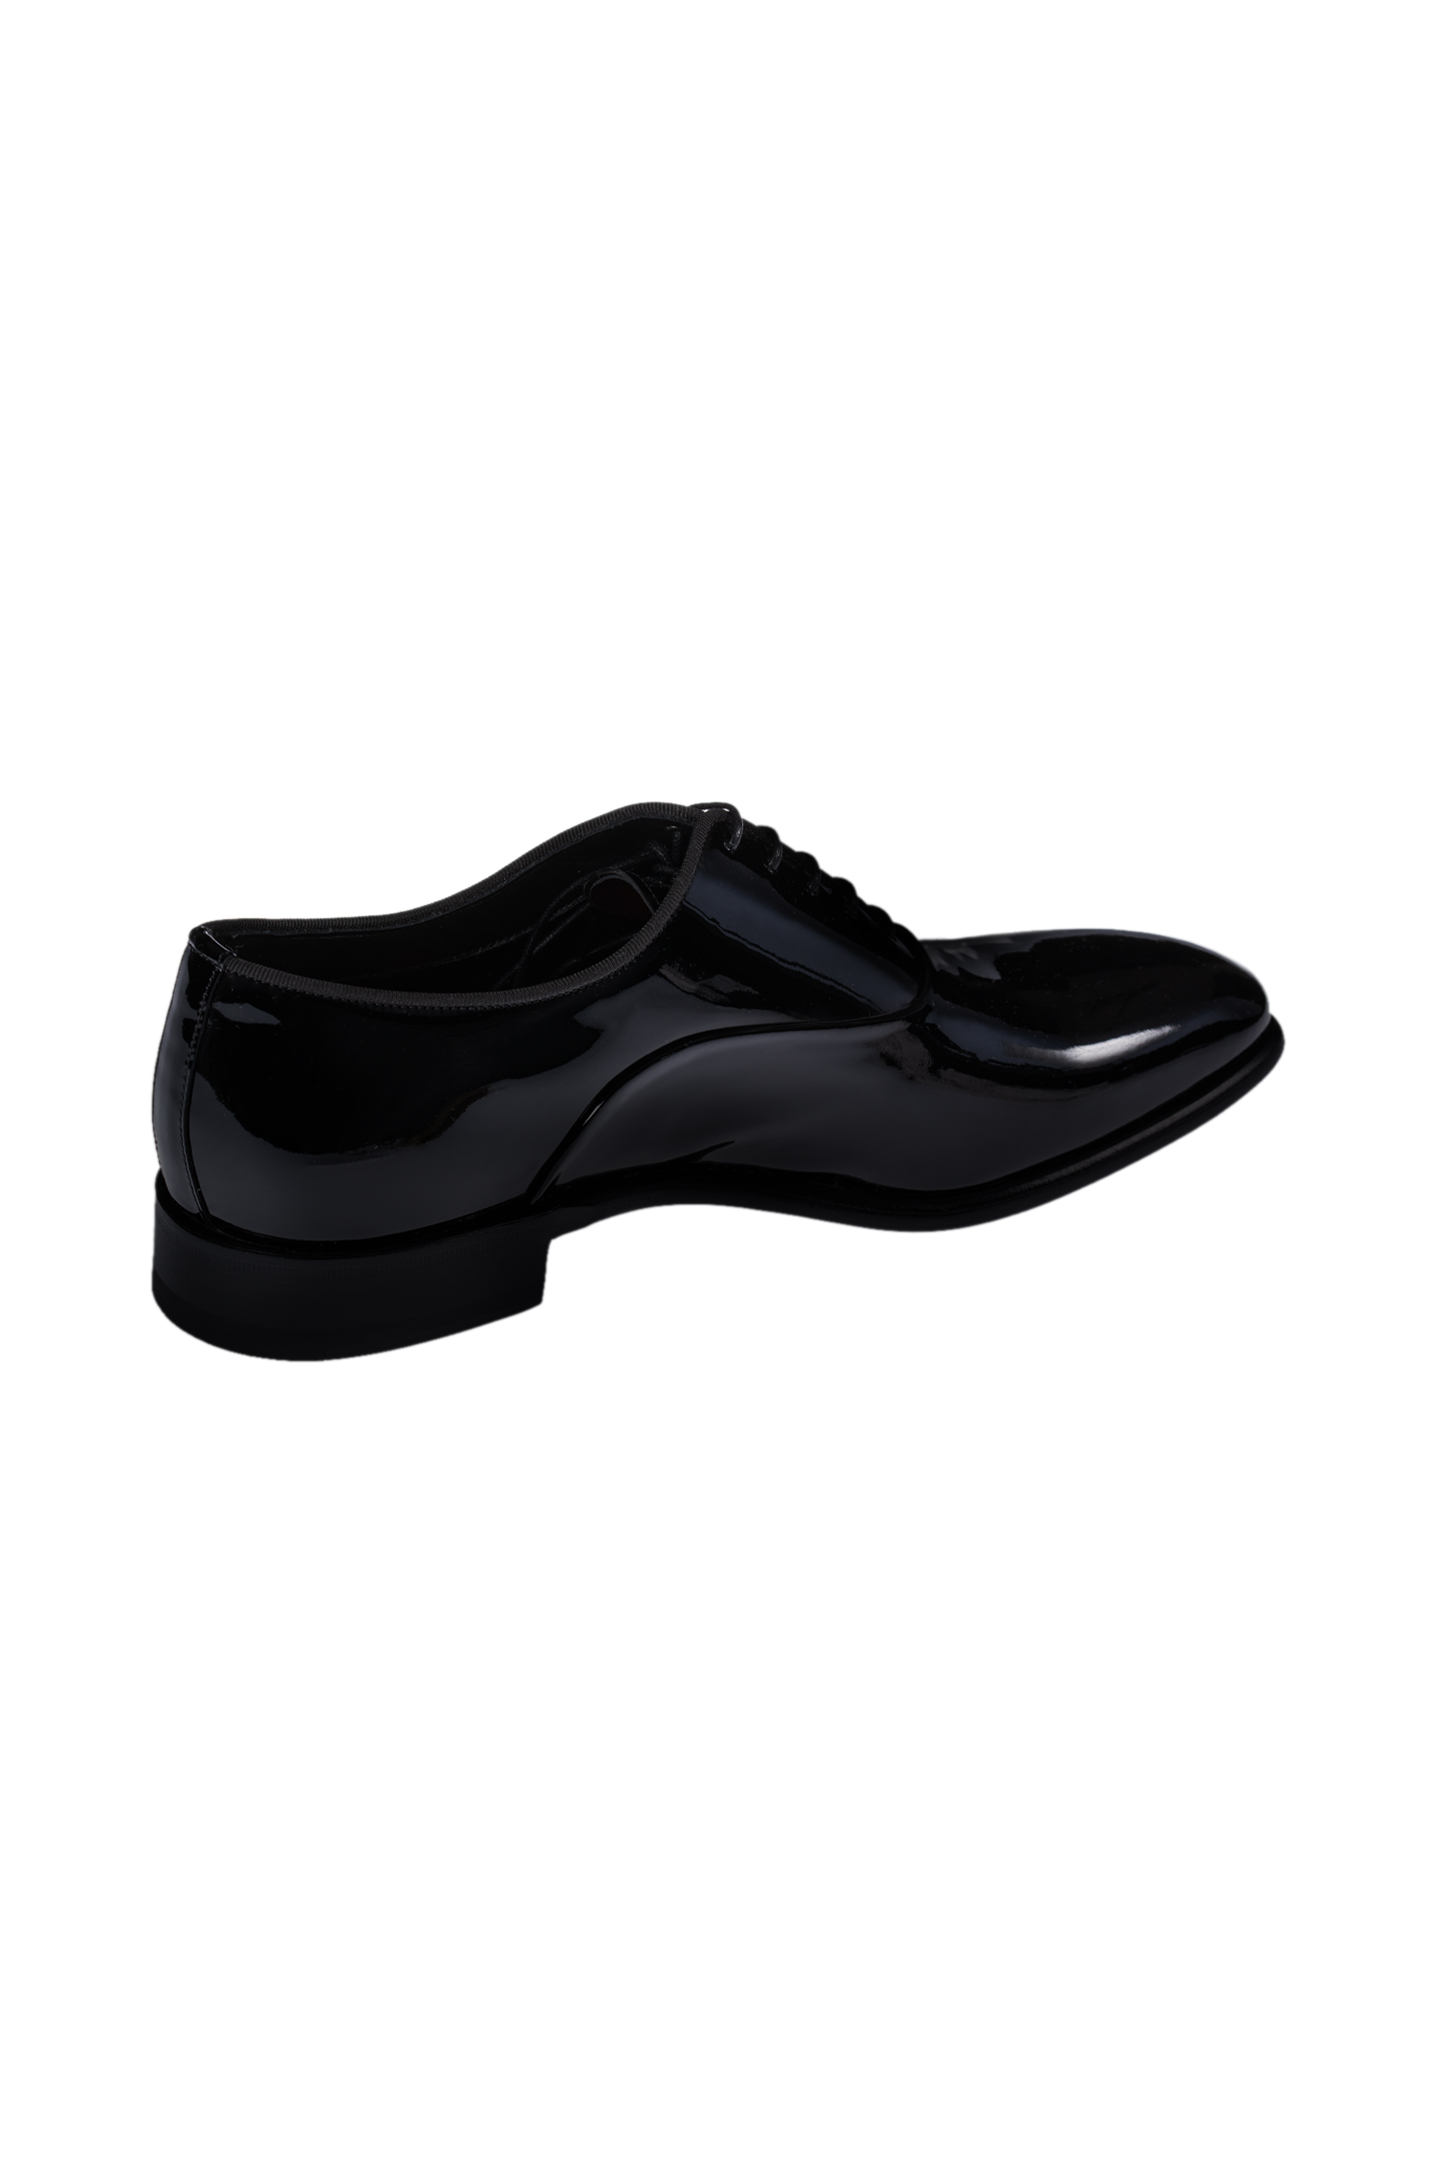 Туфли SANTONI MCNM17063BB3JVERN01, цвет: Черный, Мужской